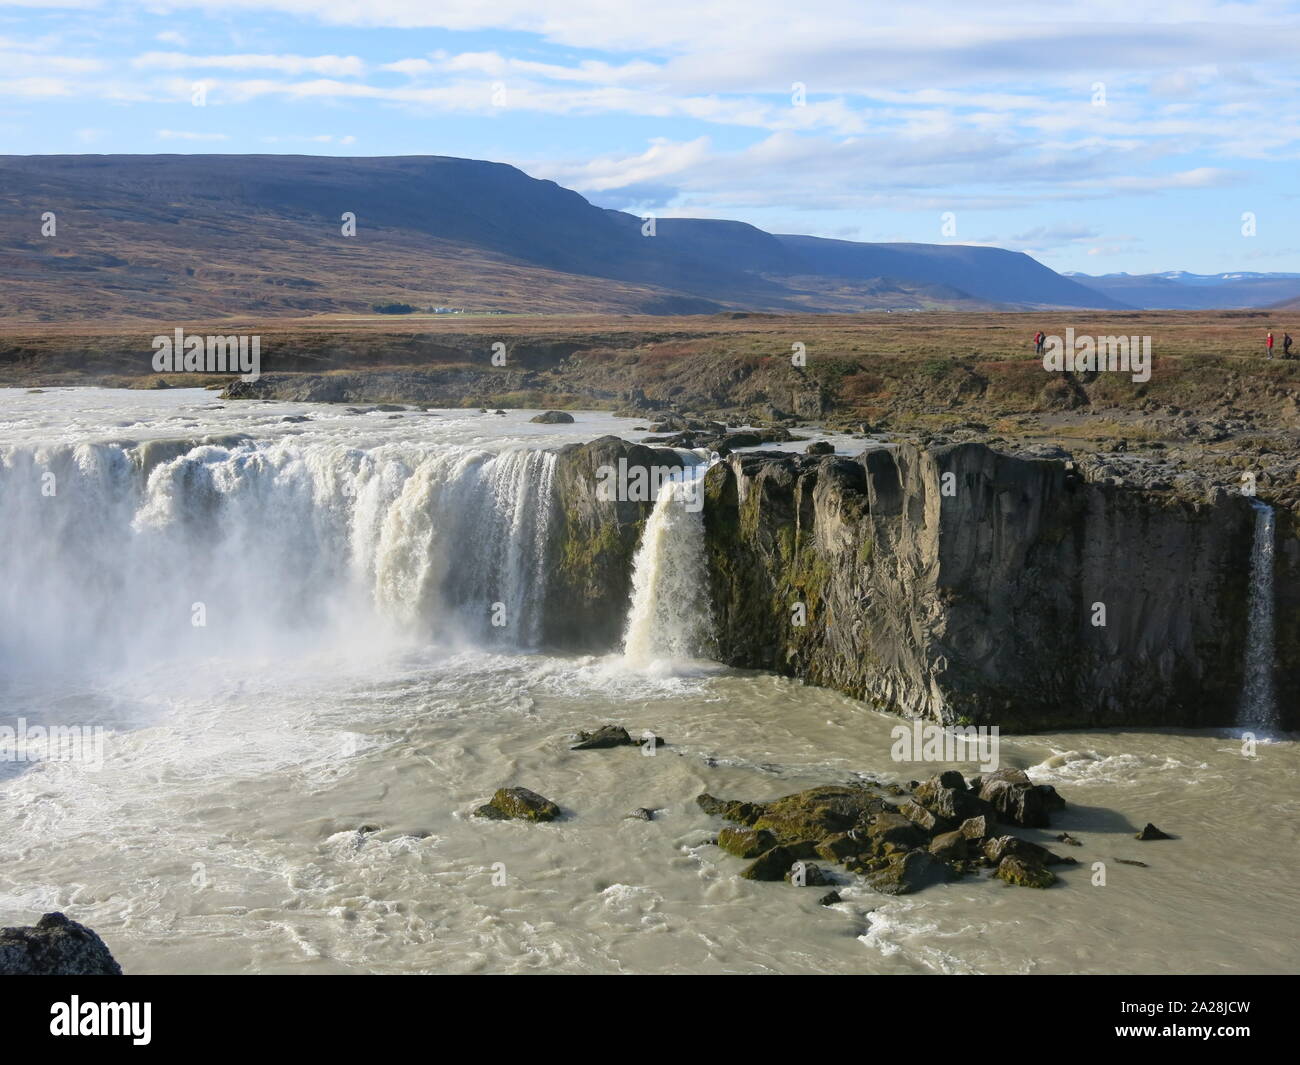 Le cascate Godafoss o 'cascata degli dèi' sono un top ten destinazione turistica nel nord dell'Islanda, noti per la loro tonante flusso d'acqua. Foto Stock